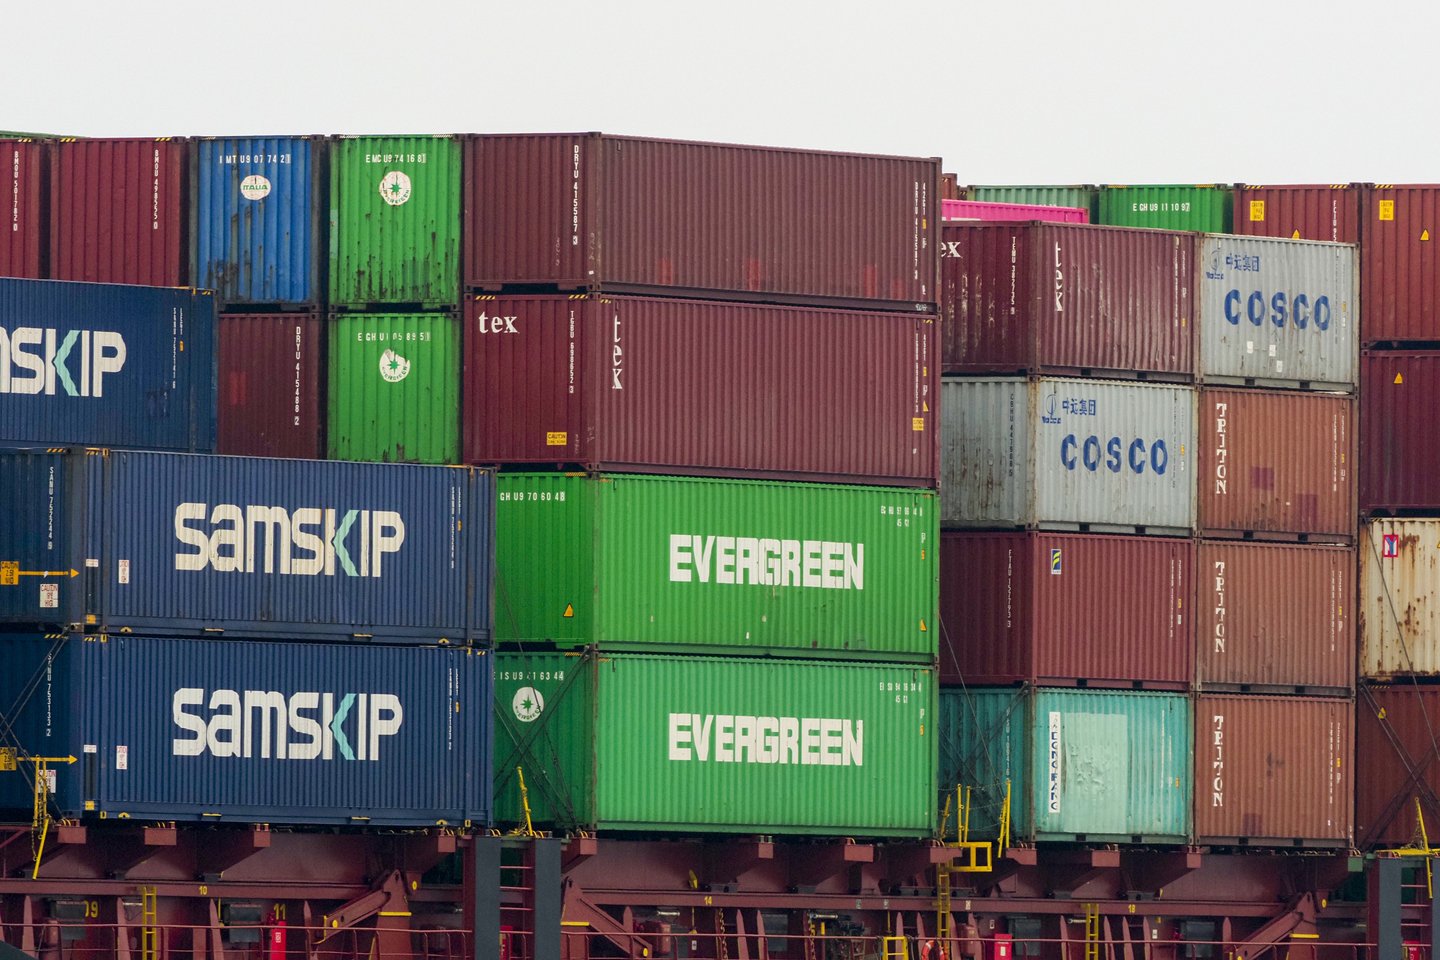 ES įvedus sankcijas Rusijai, Belgijos muitinė jau patikrino daugiau kaip 10 tūkst. konteinerių.<br>V.Ščiavinsko asociatyvi nuotr.